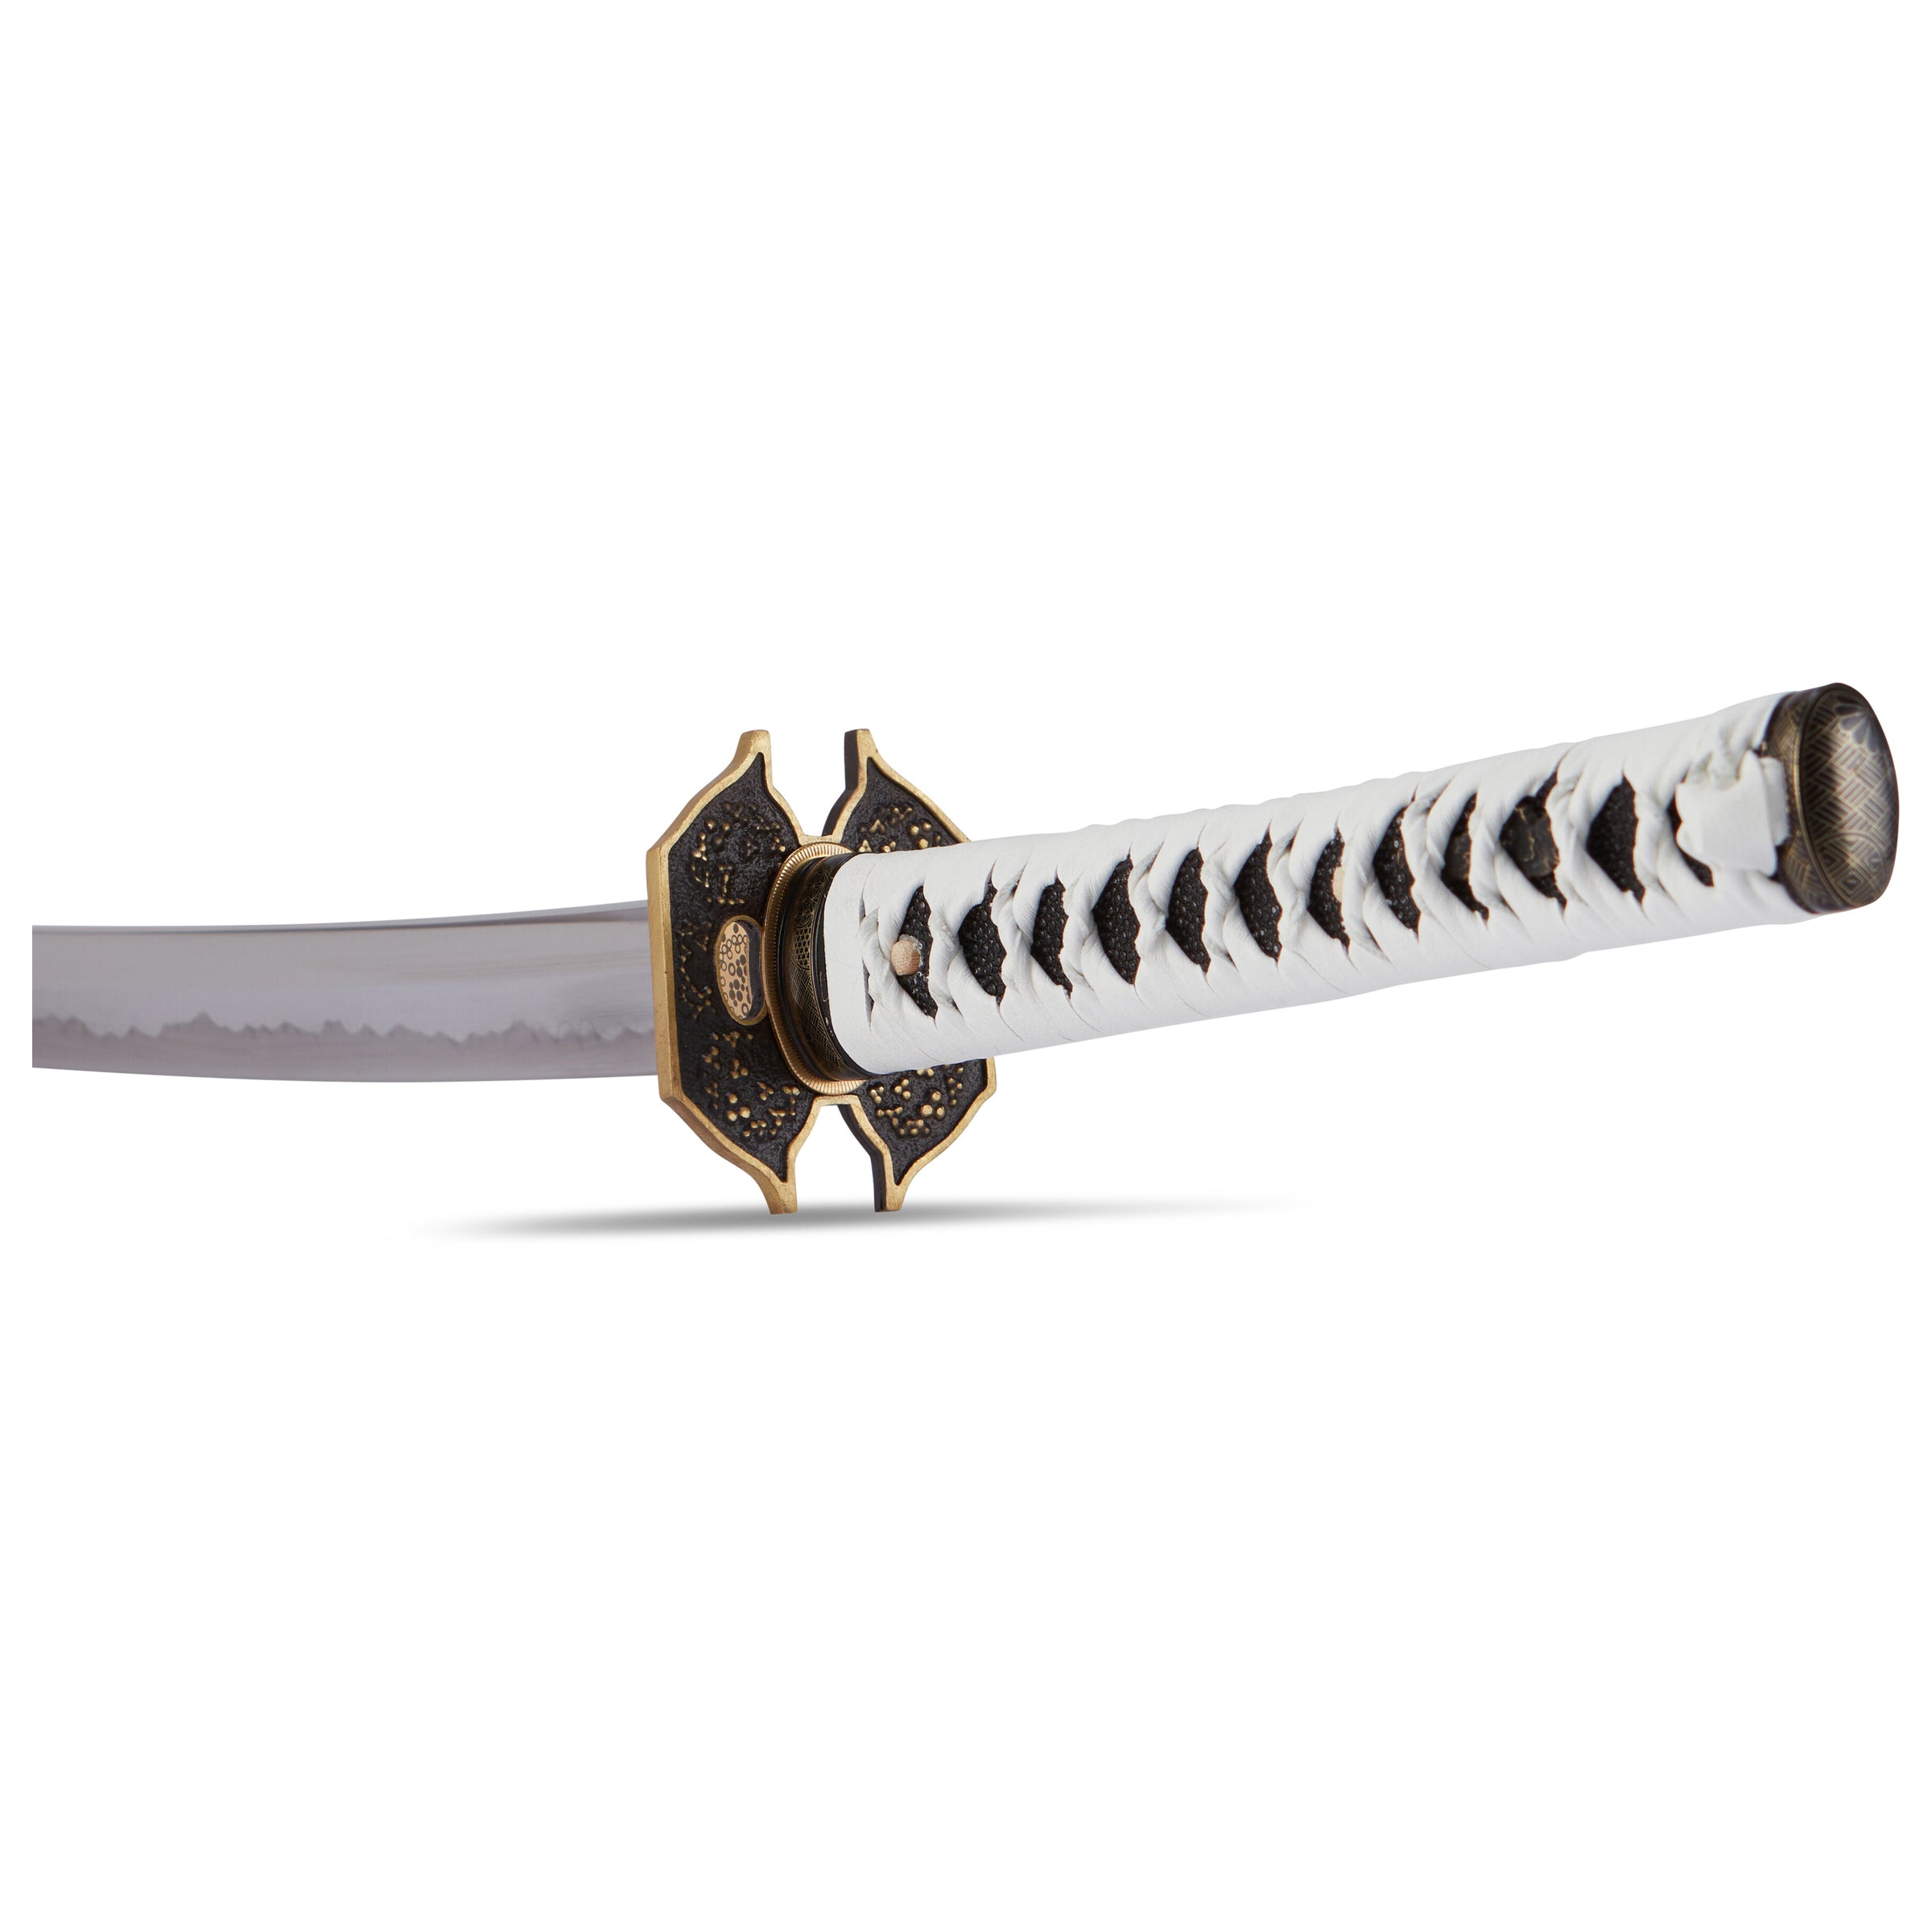 Yamato Virgin Sword 